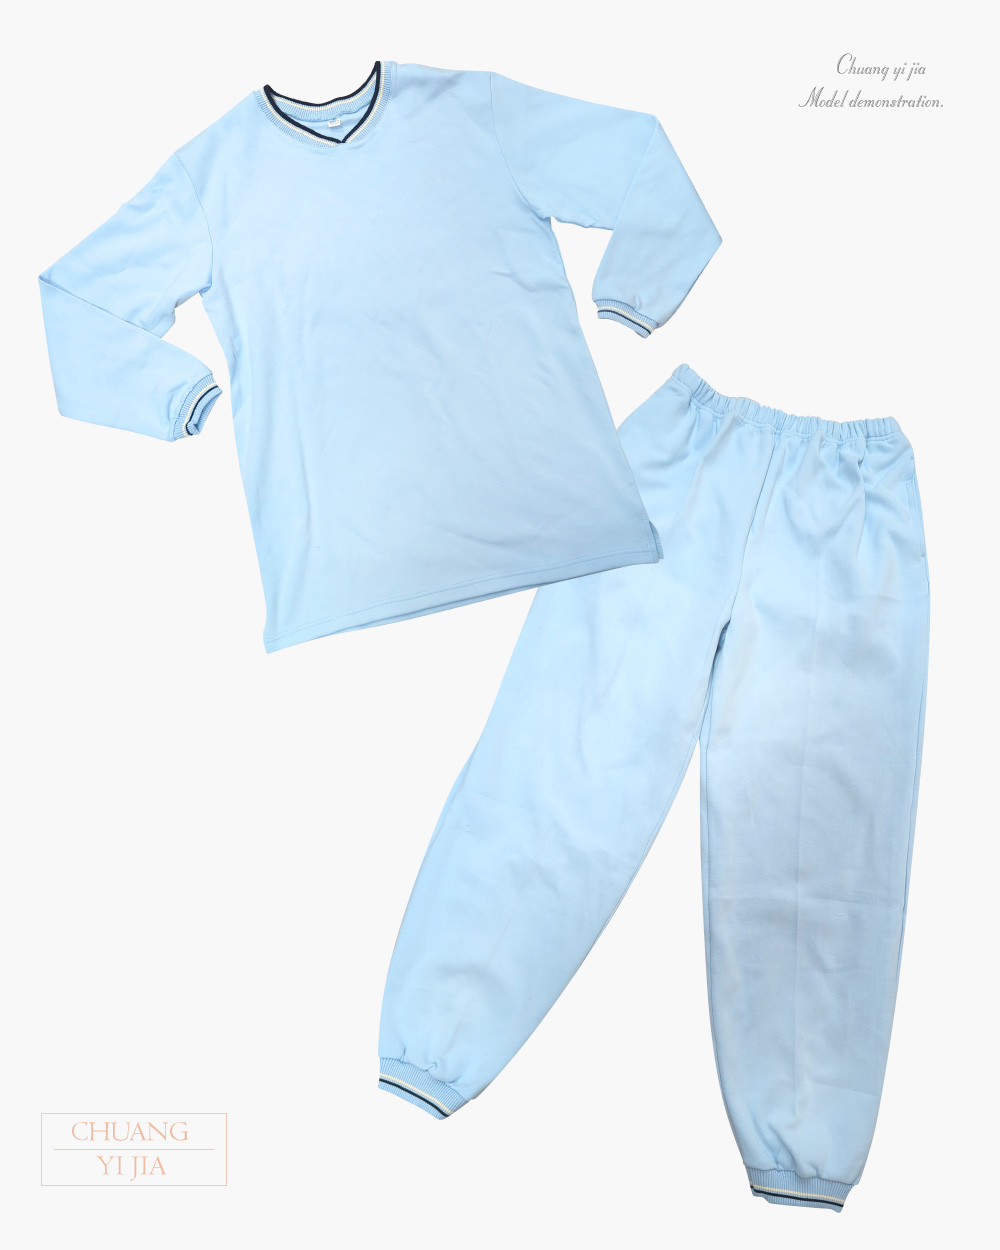 創e家團體服-健檢服-V領-水藍 套裝